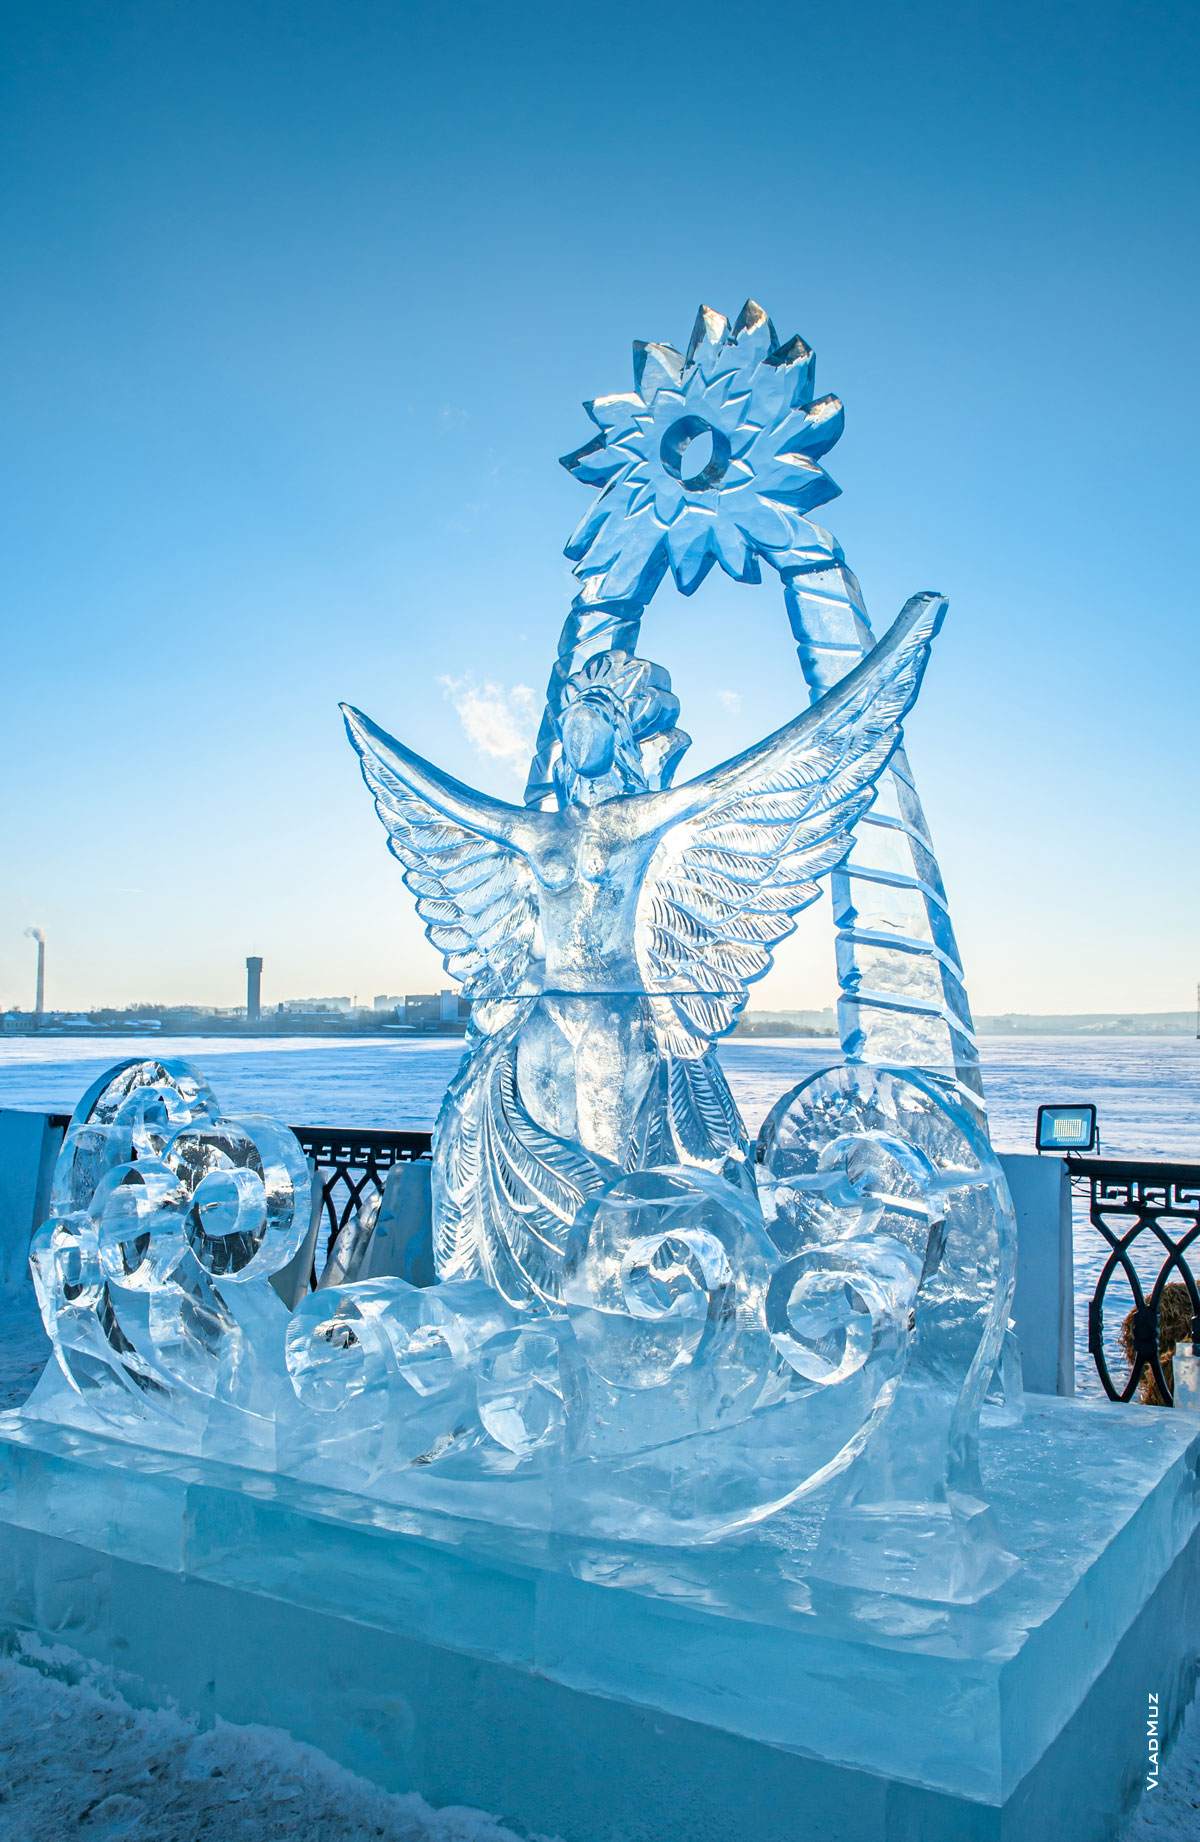 Ижевск, фестиваль «Удмуртский лед 2018»: фото ледовой скульптуры «Царевна-Лебедь»